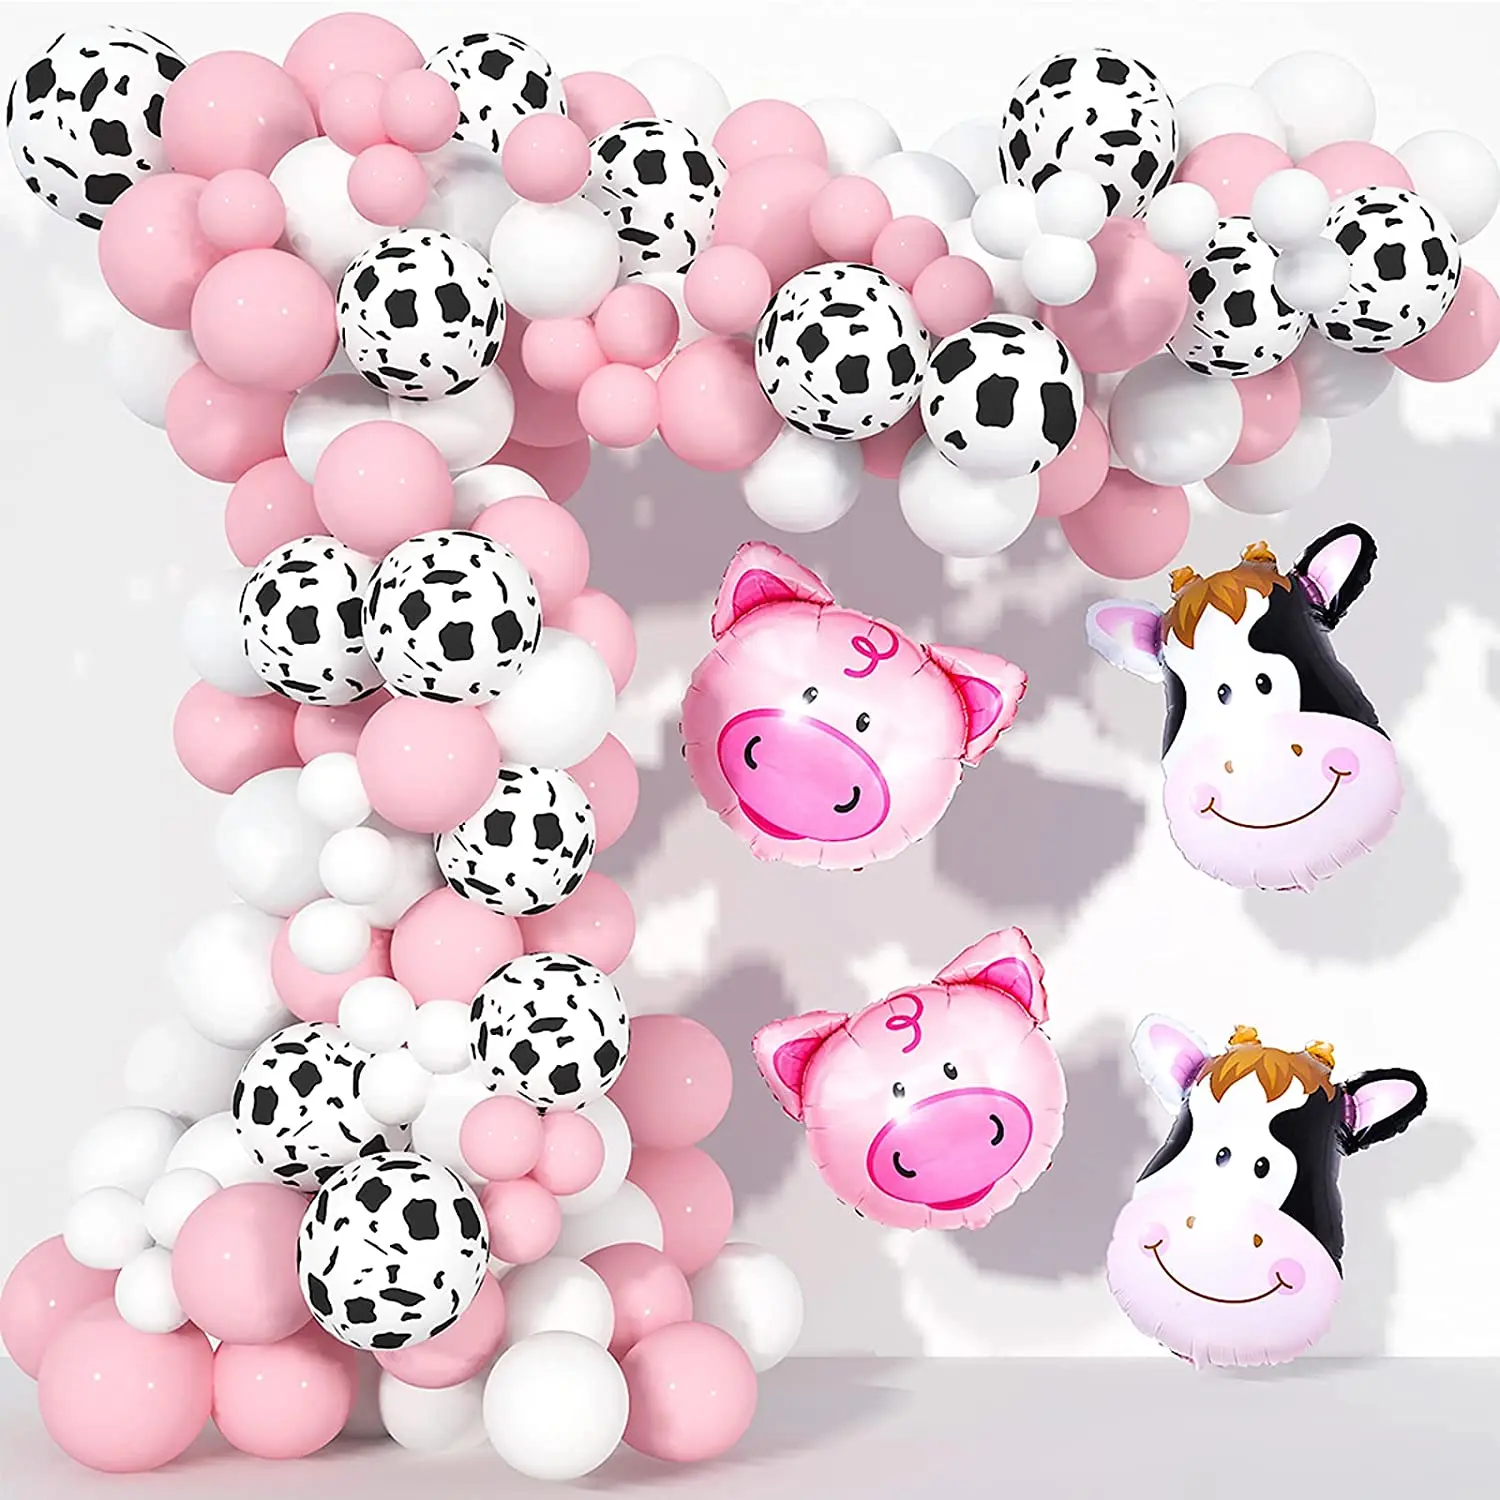 Ферма шаров. Шарик корова. Корова из воздушных шариков. Надувные шарики принт корова. Декорация корова.